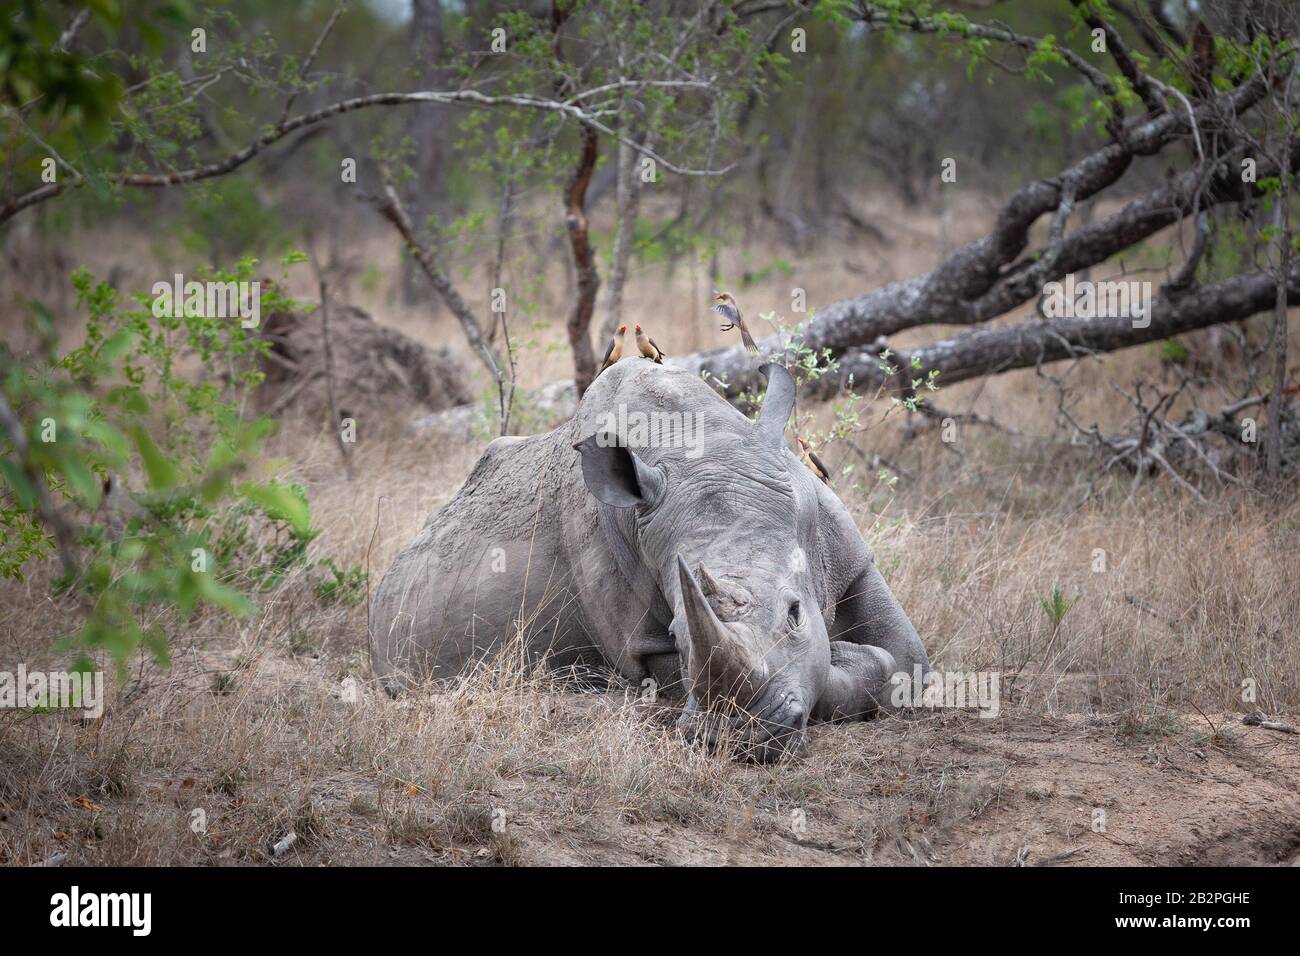 Des oxpeckers assis sur le rhinocéros endormi dans le parc national Kruger Afrique du Sud Banque D'Images